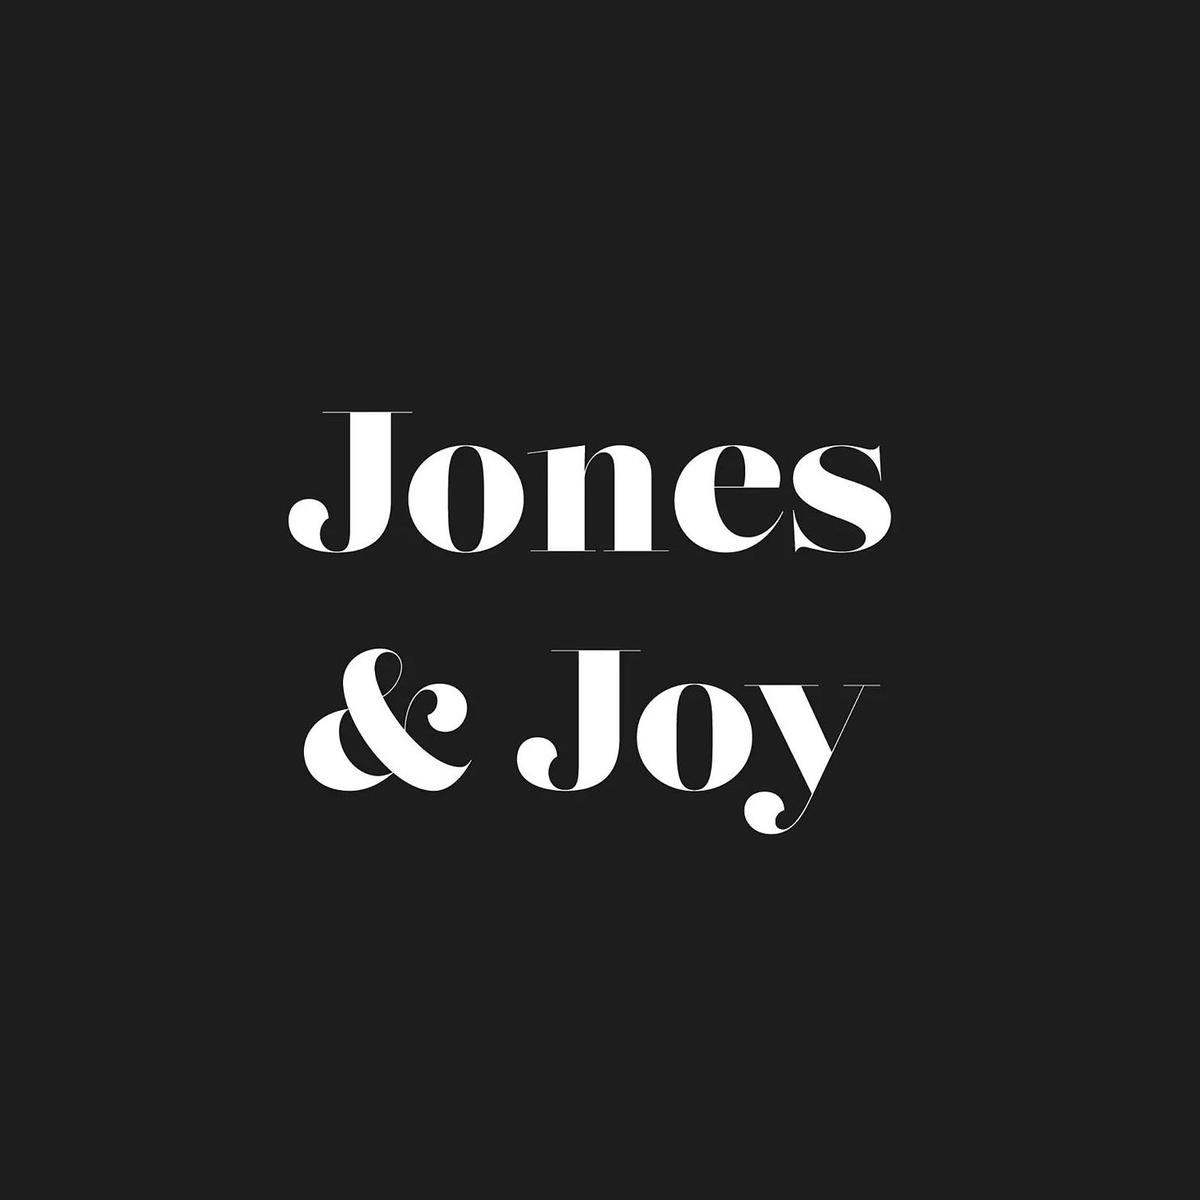 Jones & Joy's images